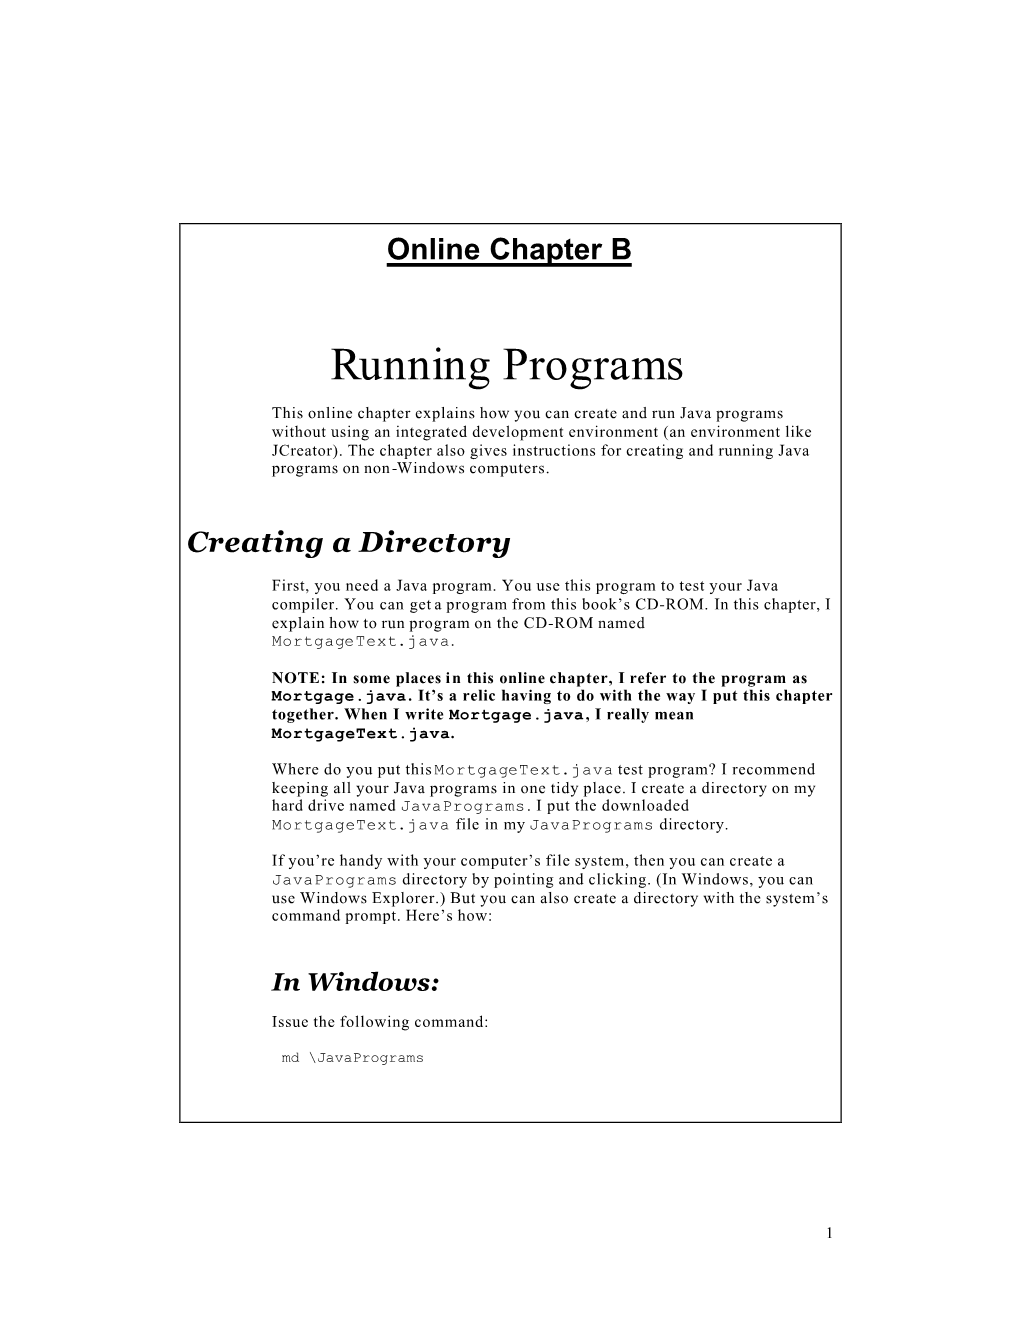 Running Programs